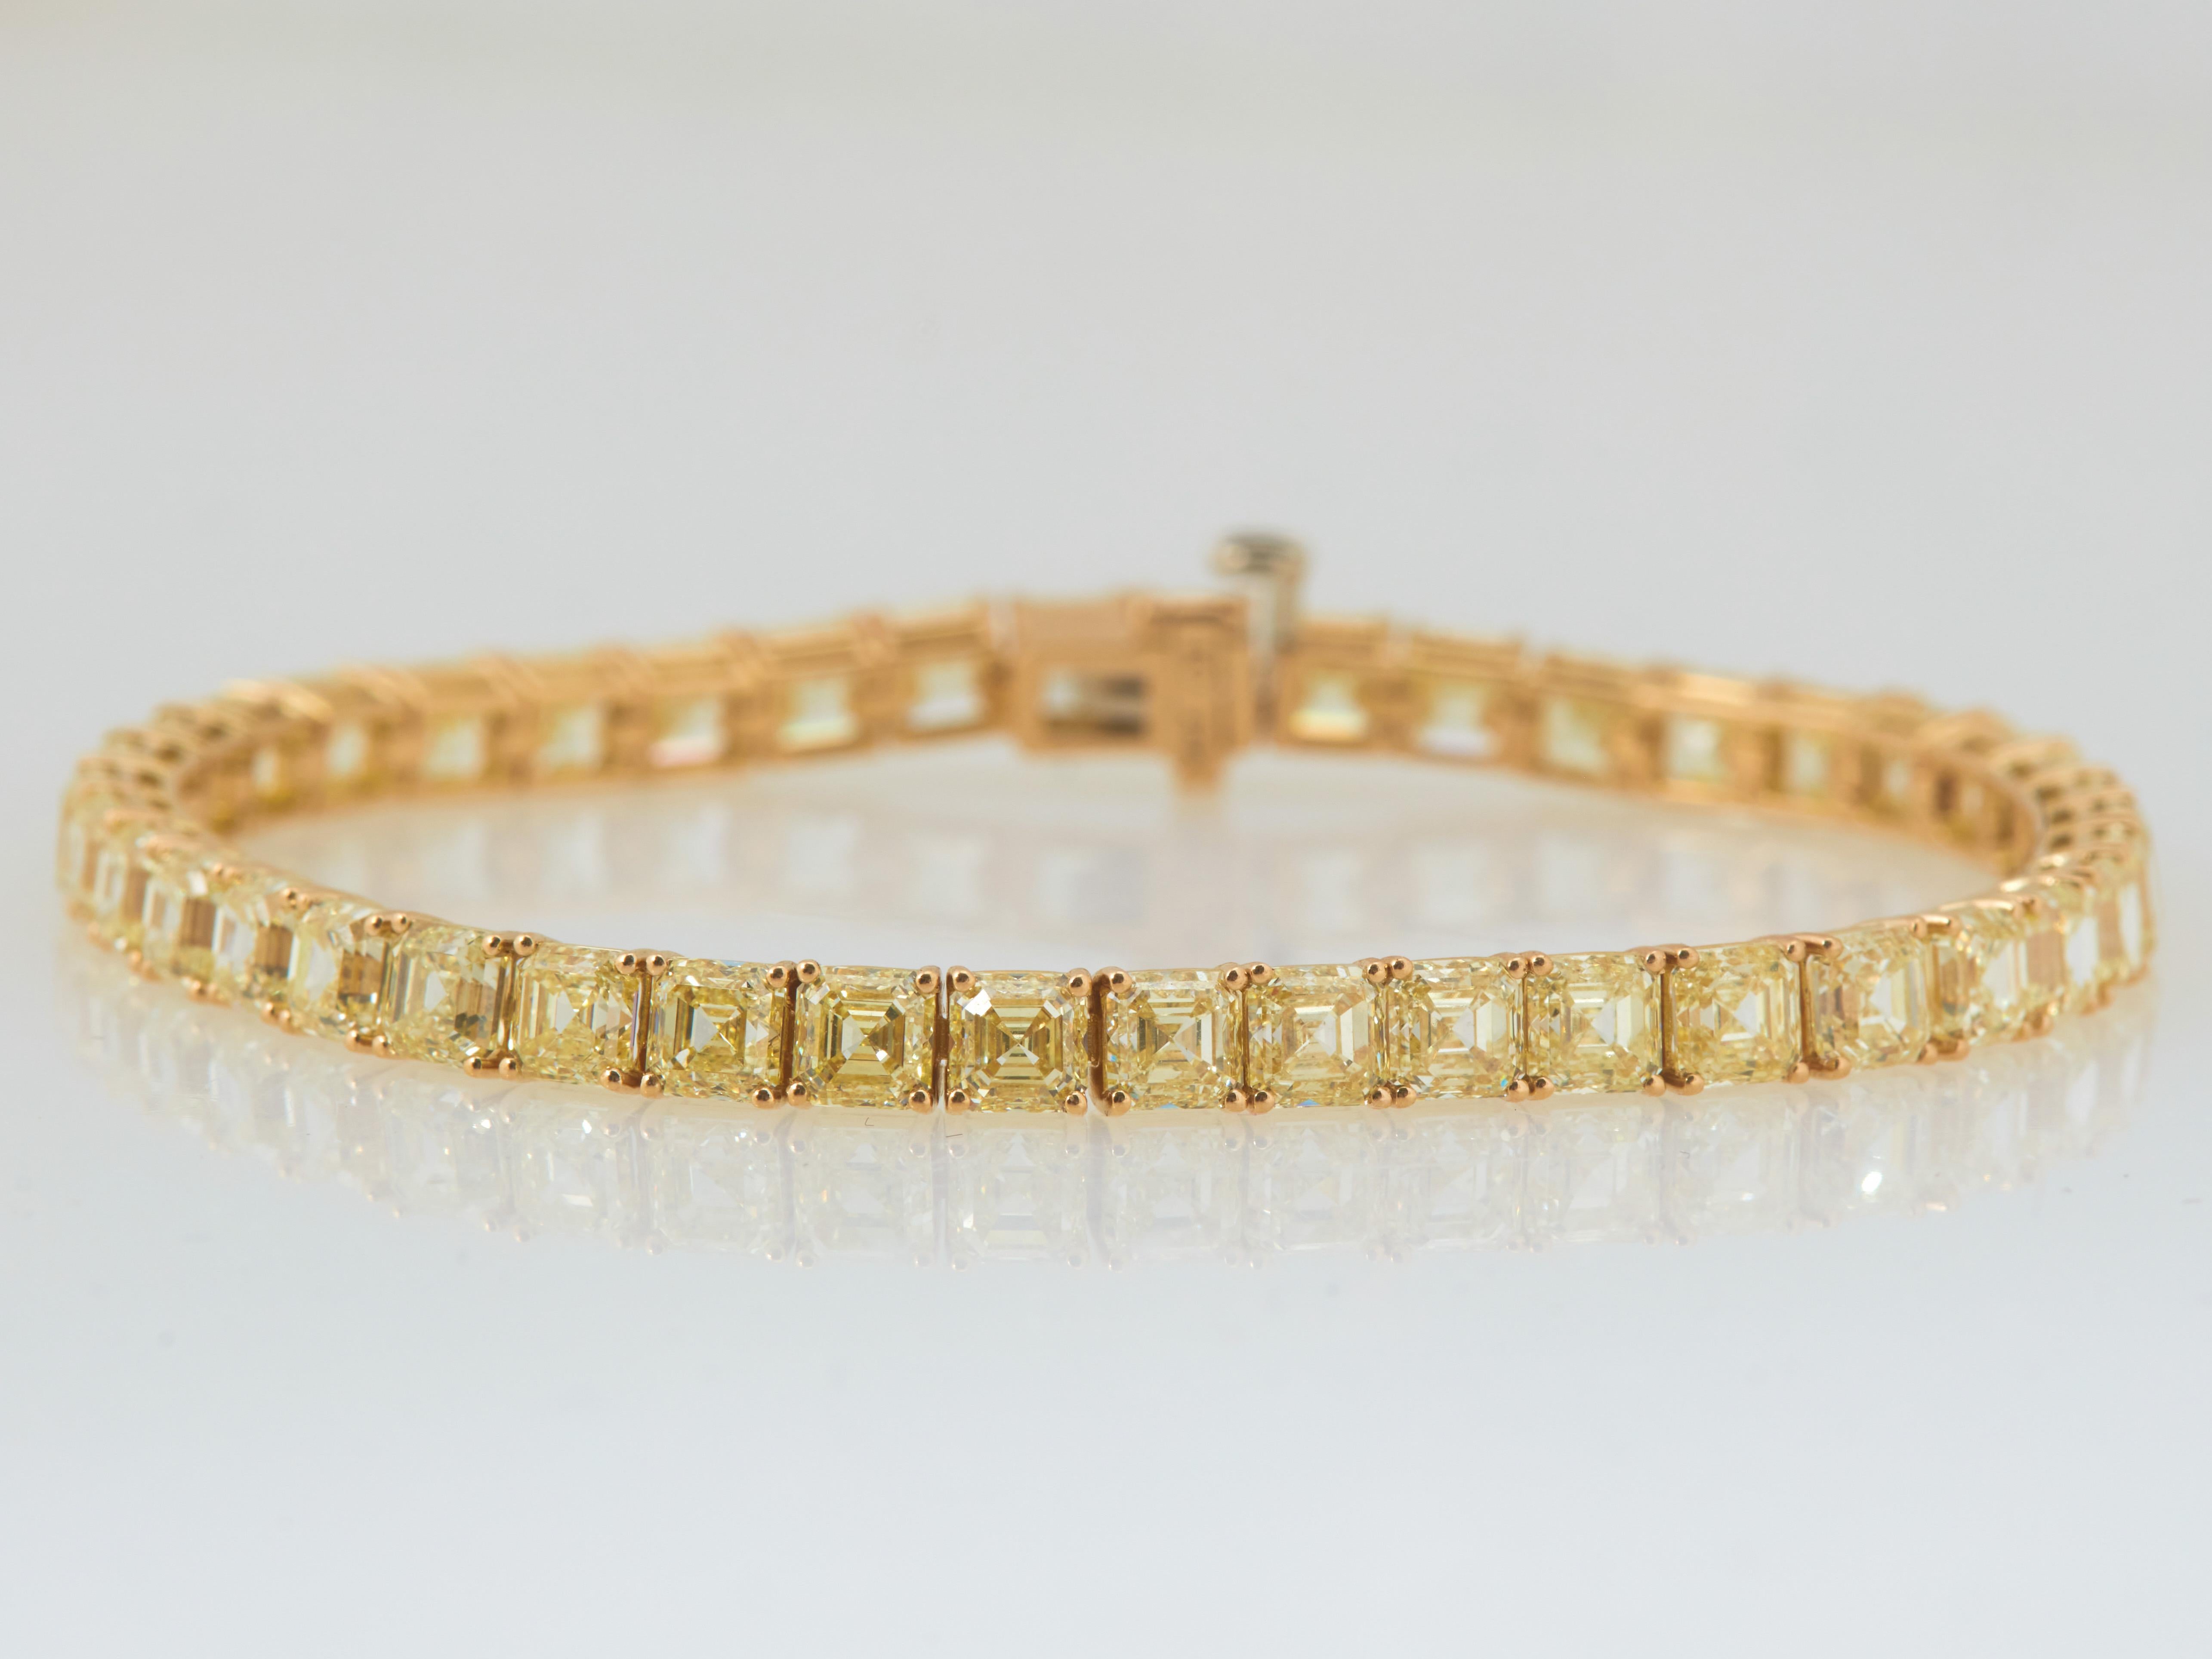 Außergewöhnliches Armband mit gelbem Diamant im Asscher-Schliff. Jeder Diamant hat knapp ein halbes Karat. Gefertigt aus poliertem 18K Gelbgold mit einem Gesamtgewicht von ca. 20,87 Karat.
Asscher-Schliffe sind sehr selten, wenn es um gelbe